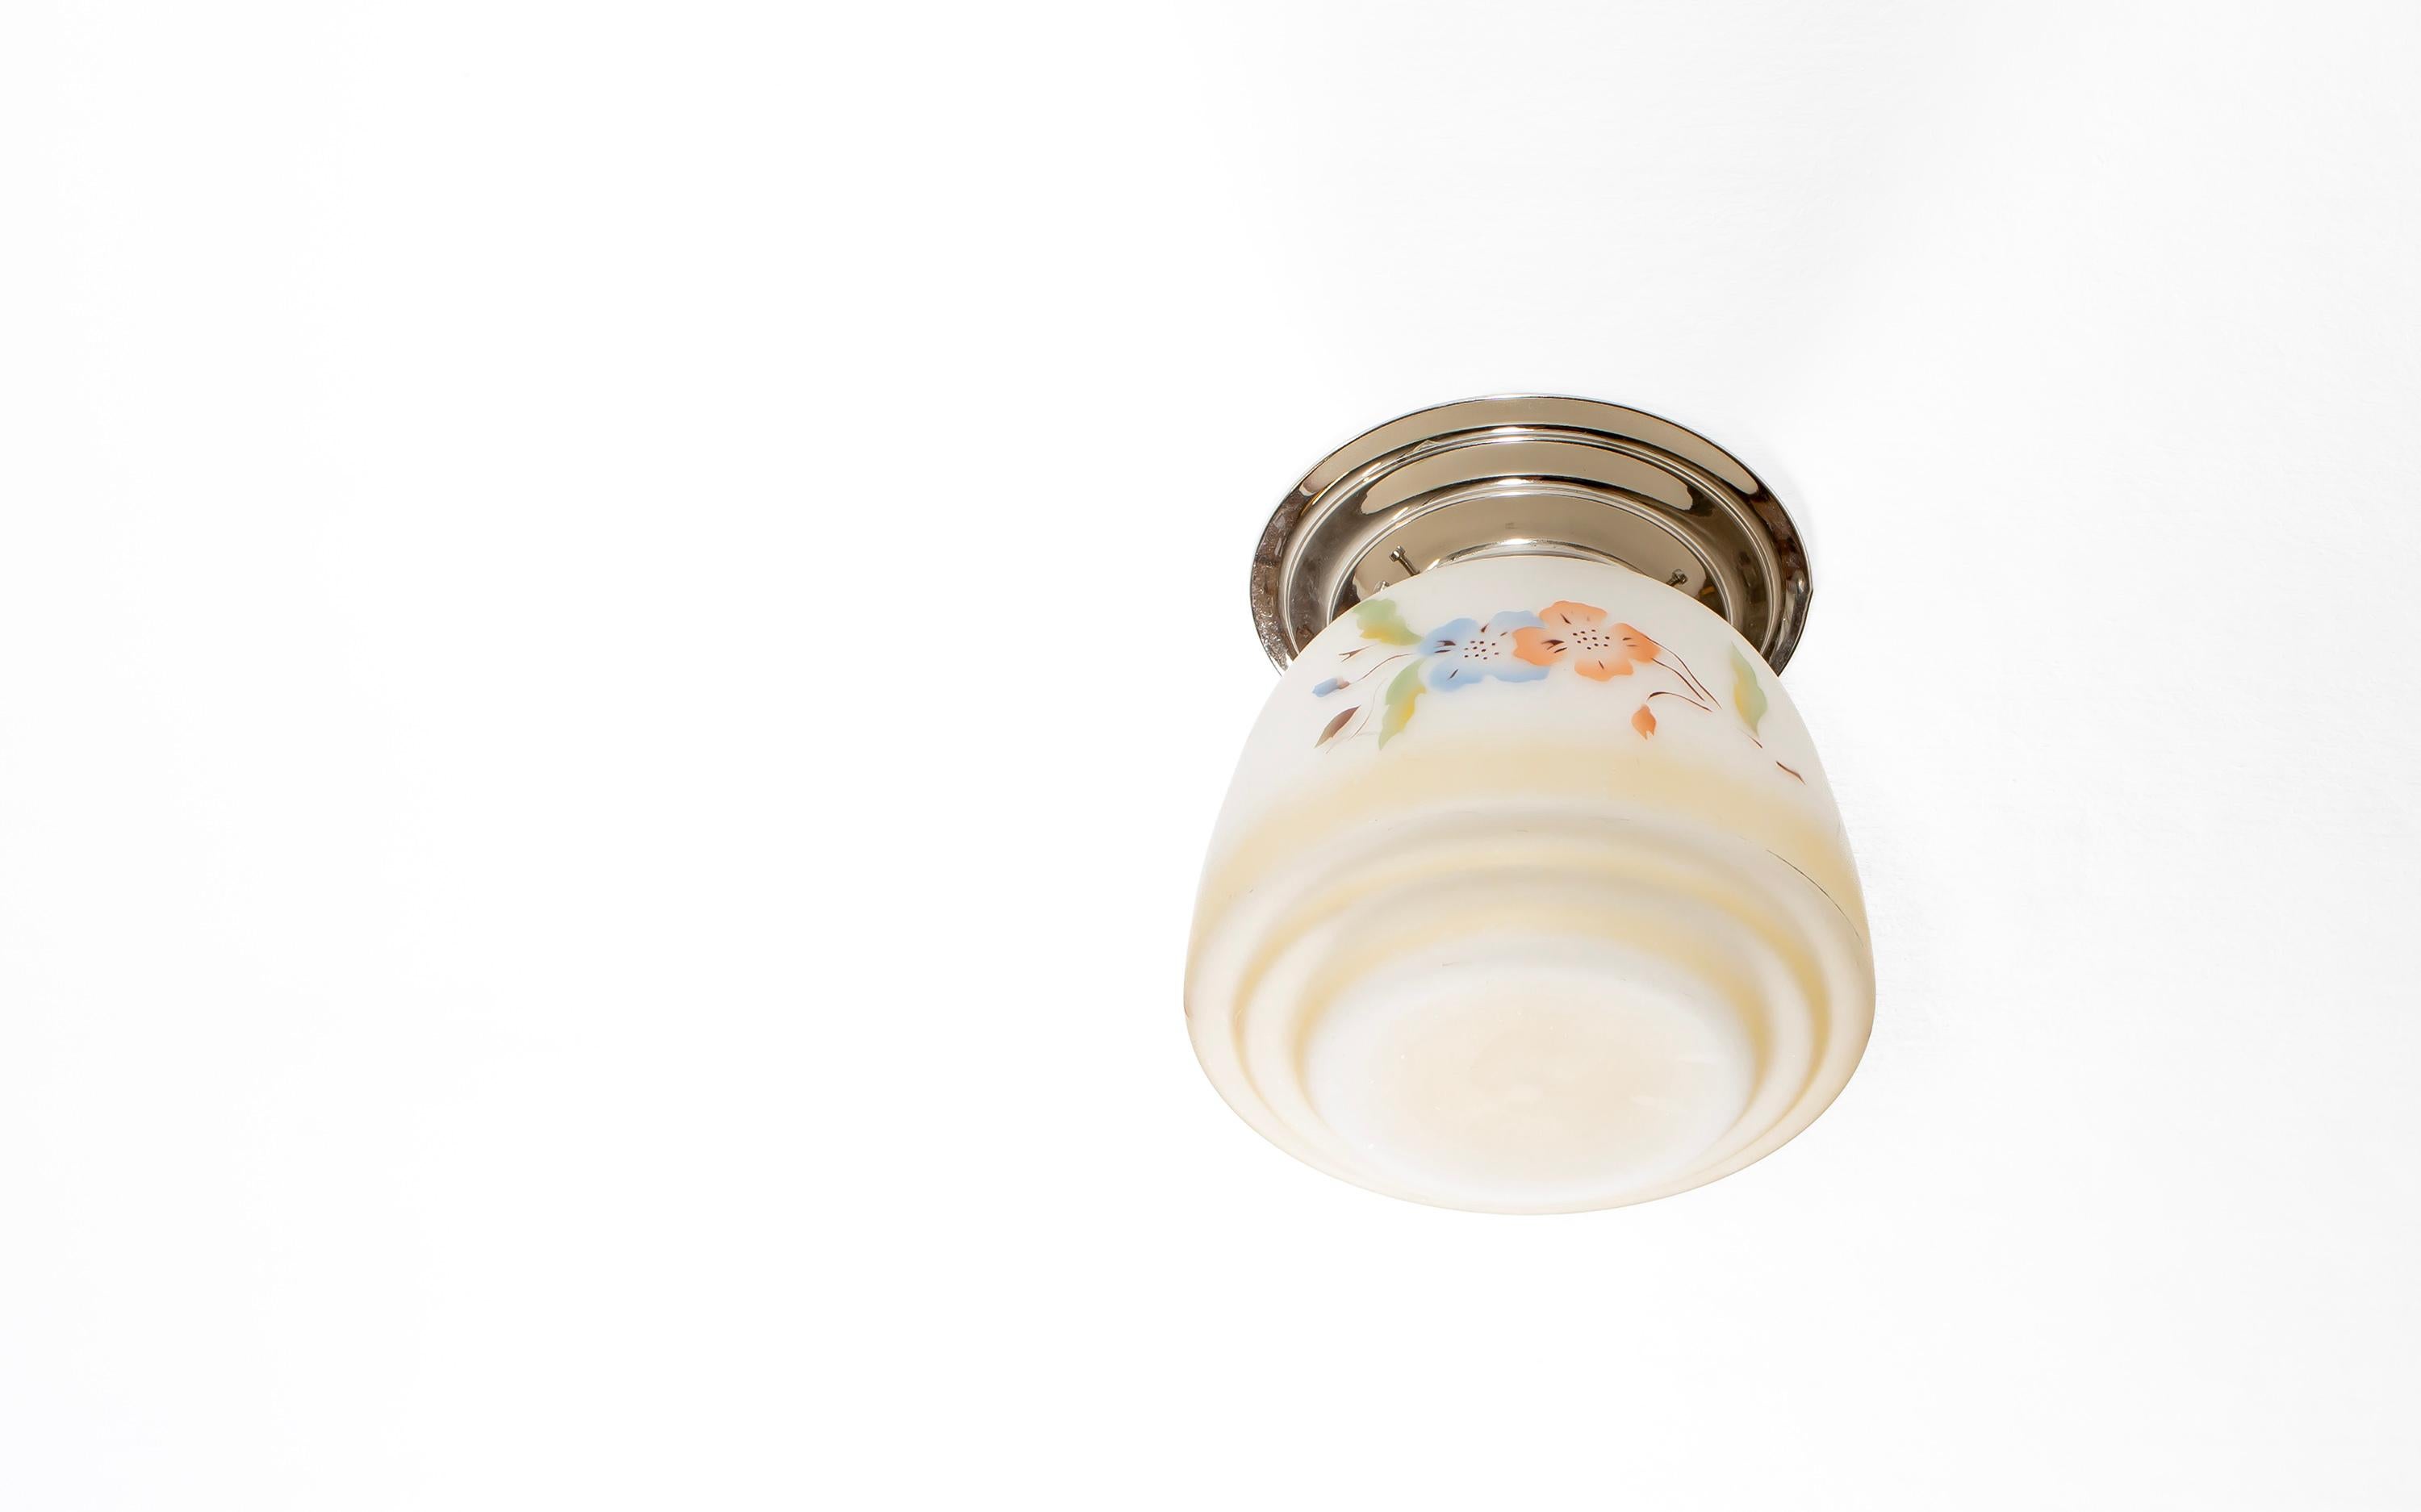 Plafonnier décoratif en verre opalin avec base en métal chromé. Conçue et fabriquée en Norvège à partir de la première moitié des années 1950. La lampe fonctionne parfaitement et est en bon état. Elle est équipée d'une douille pour ampoule E27